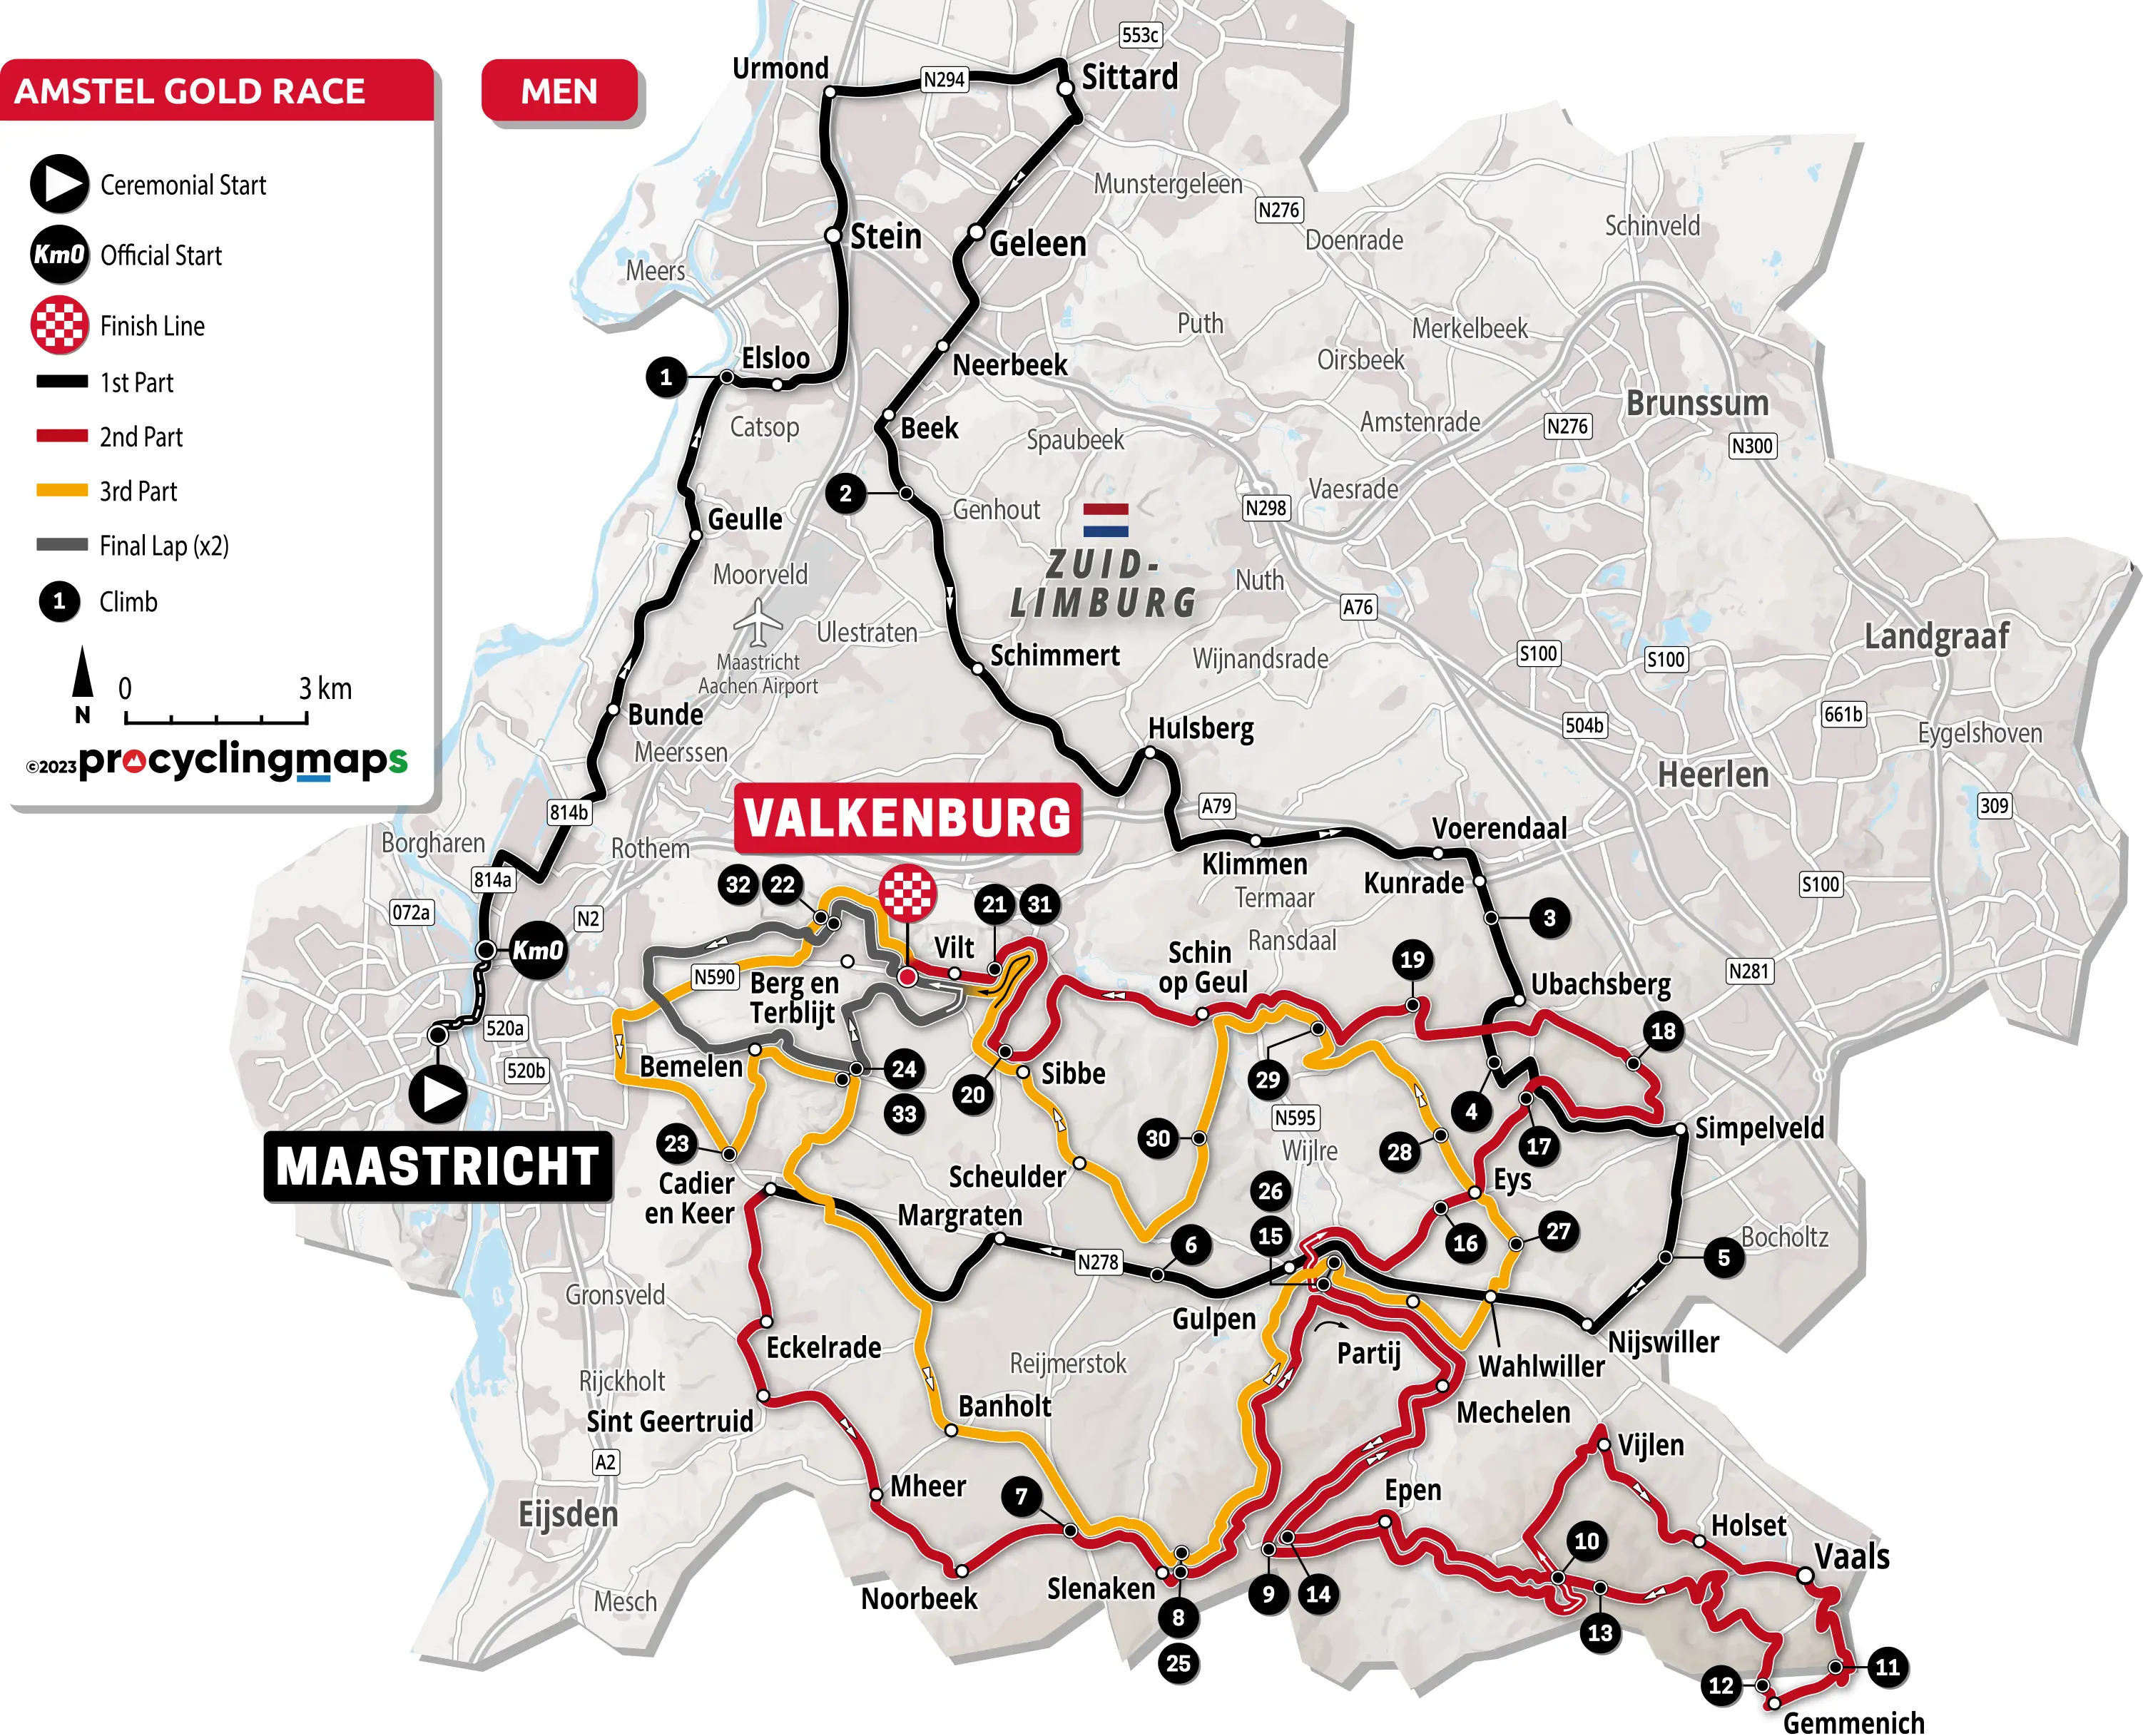 Amstel Gold Race: Recorrido y equipos - Ciclo21